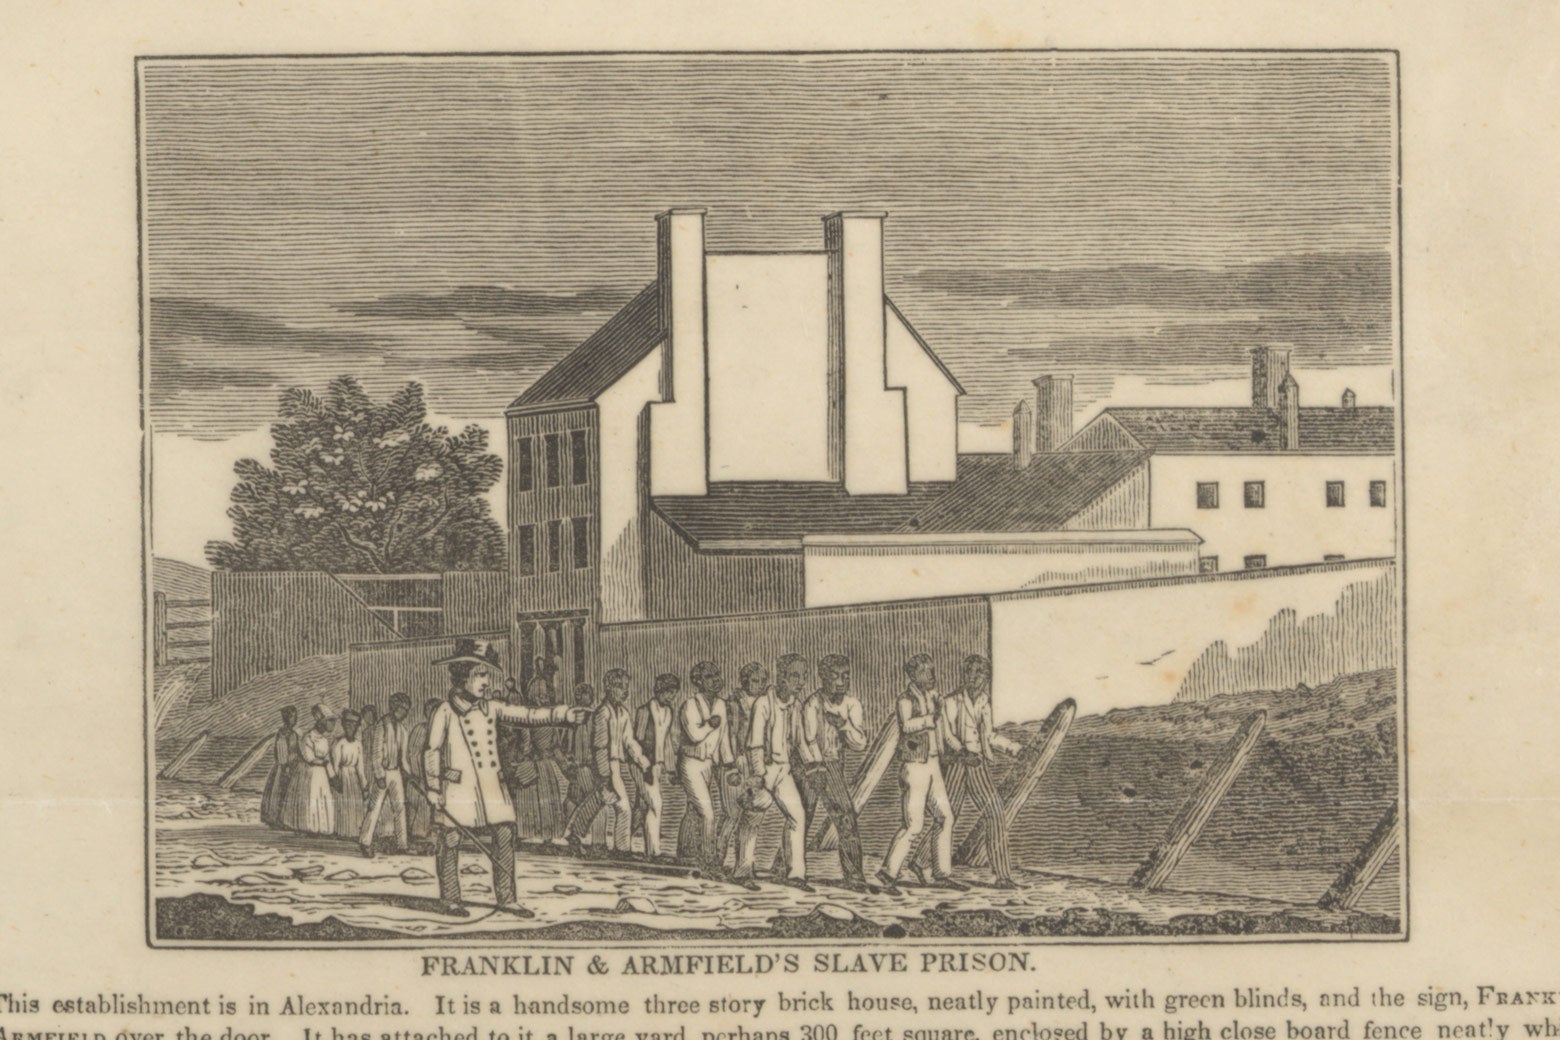 "Franklin & Armfield's Slave Prison." 